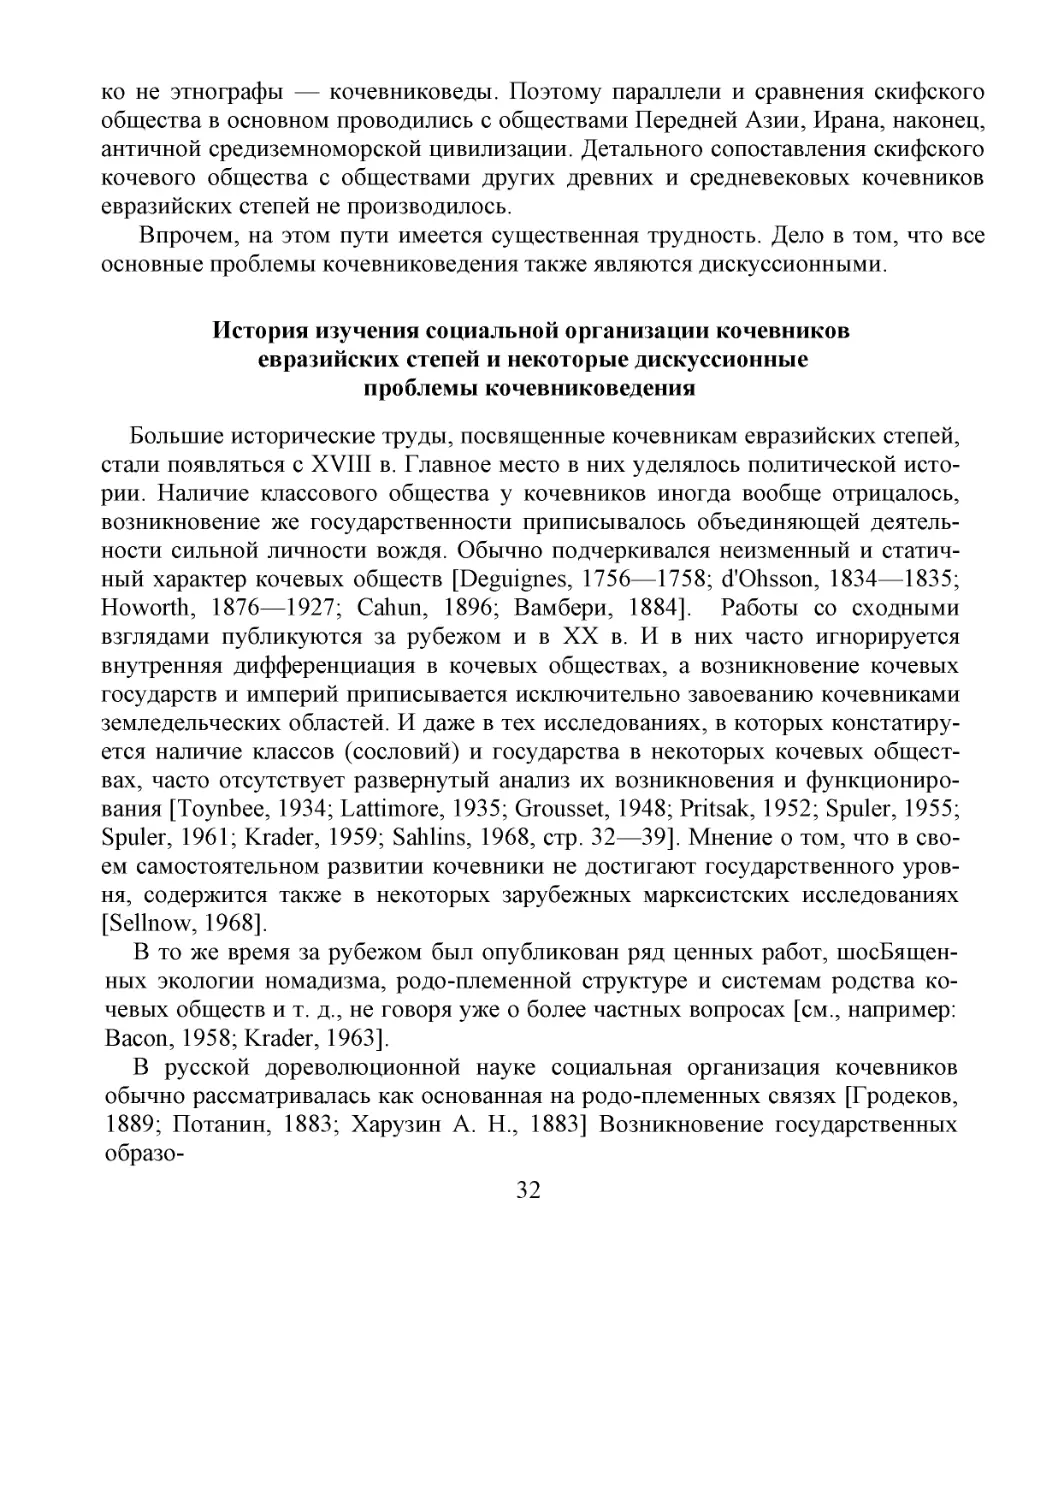 ﻿История изучения социальной организации кочевников
евразийских степей и некоторые дискуссионные 
проблемы кочевниковедения